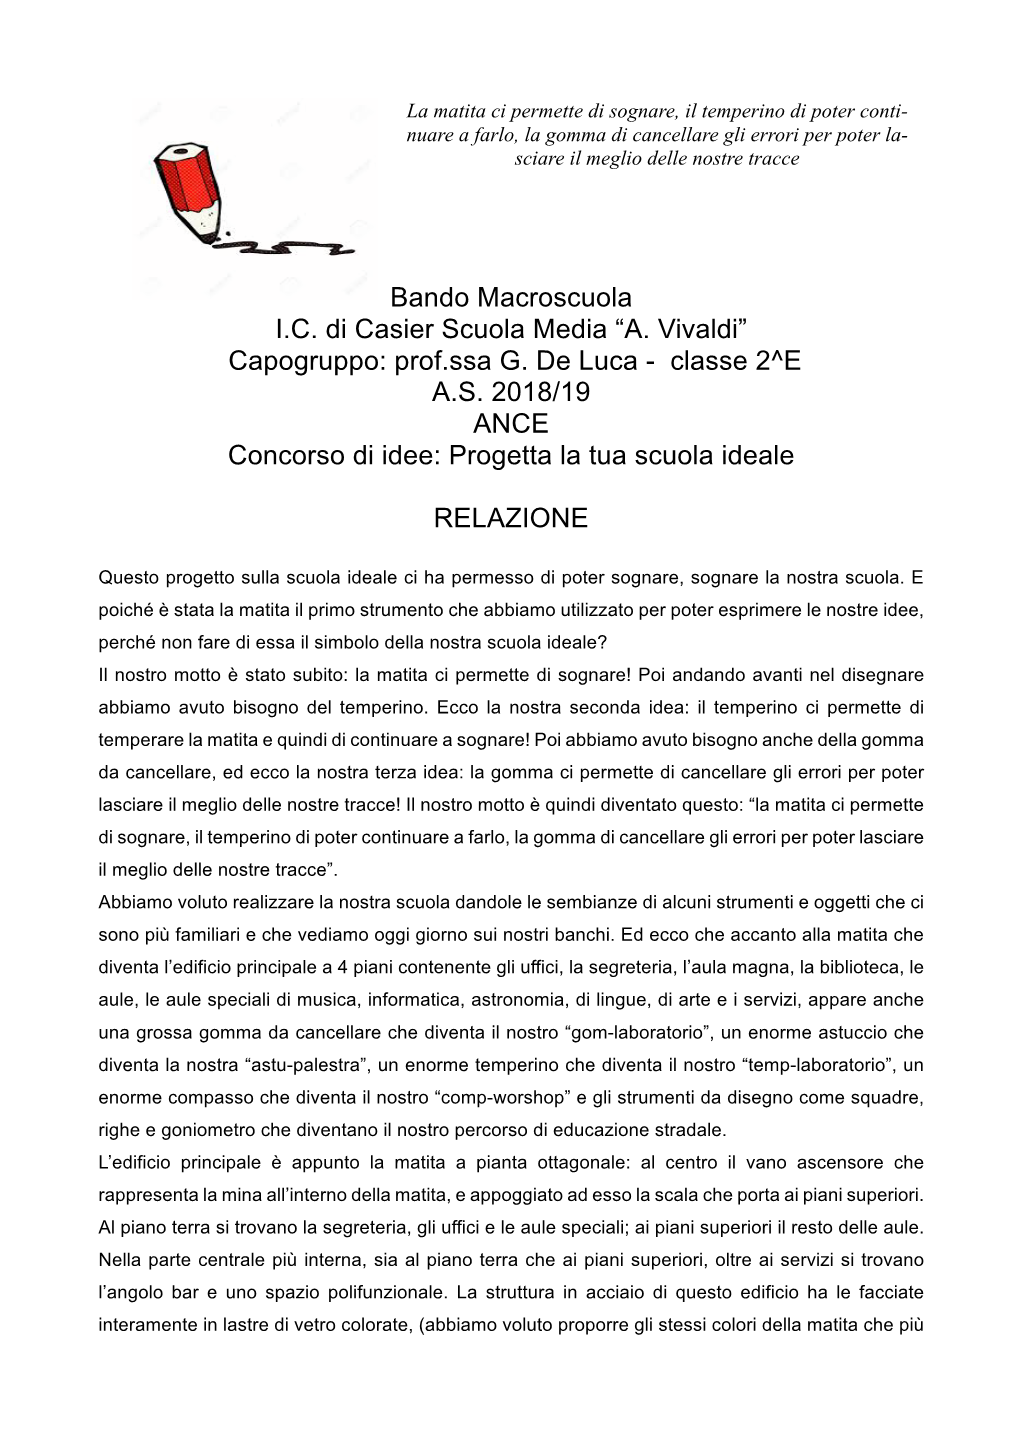 Bando Macroscuola I.C. Di Casier Scuola Media “A. Vivaldi” Capogruppo: Prof.Ssa G